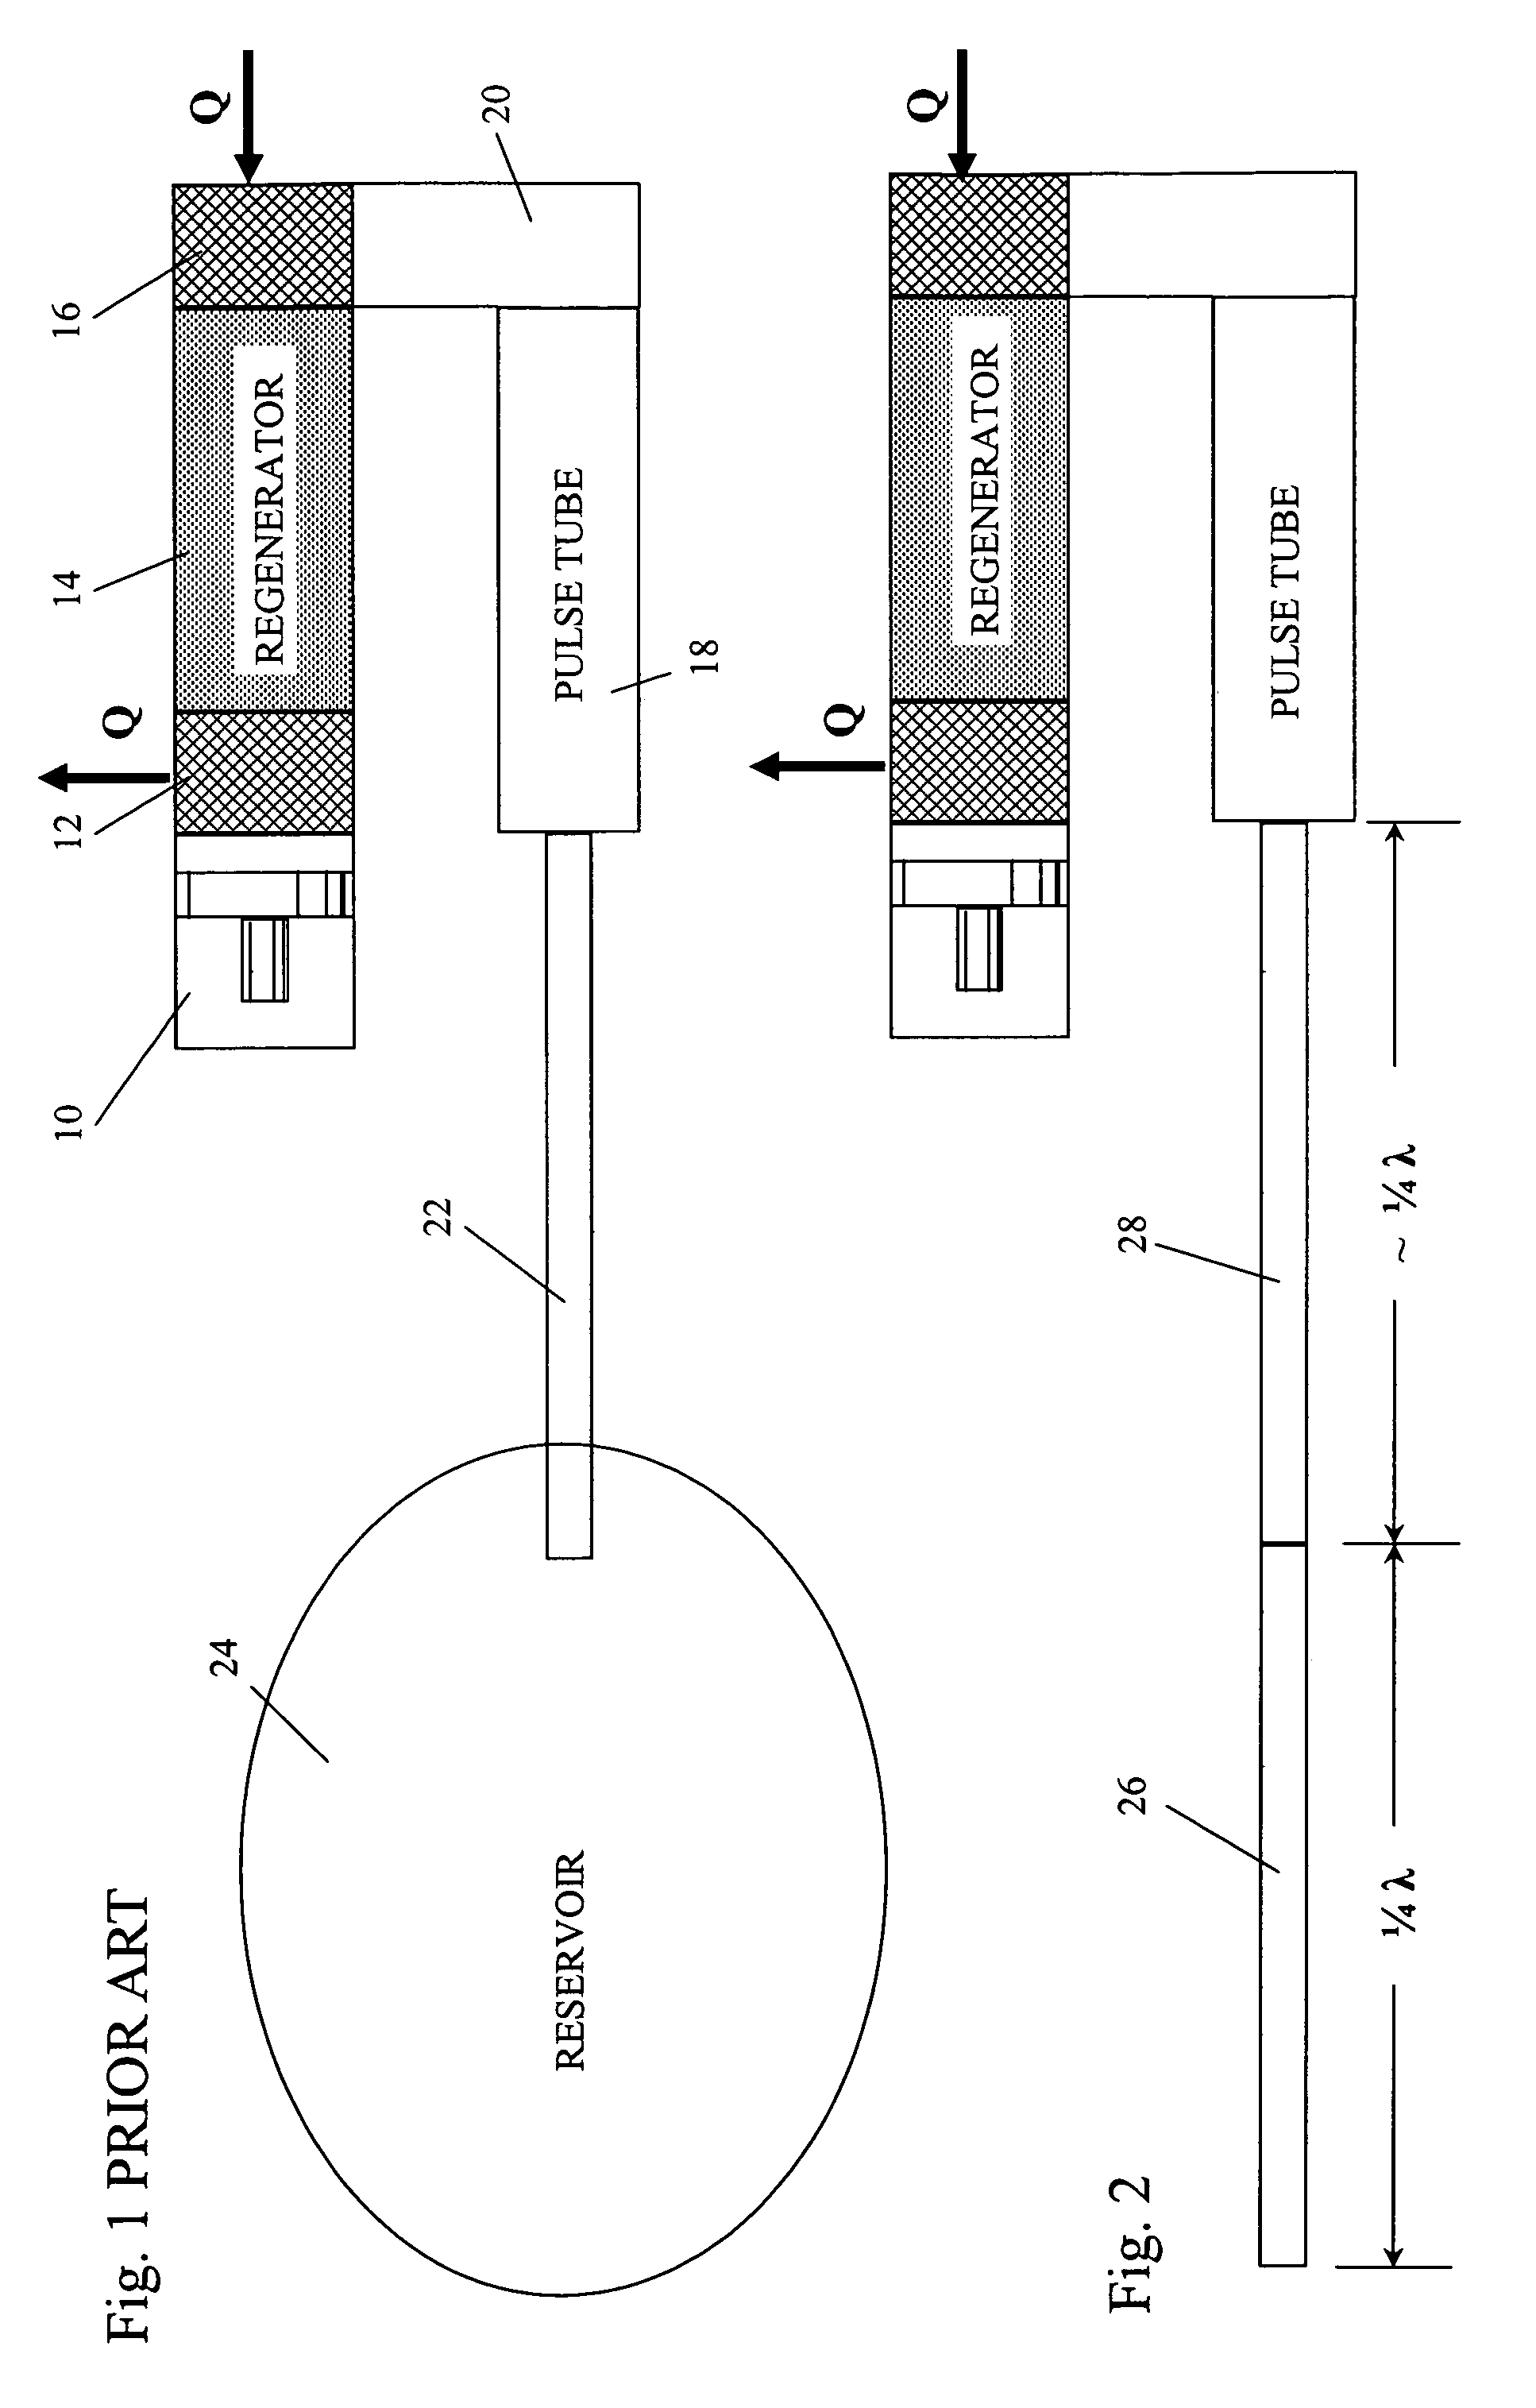 Pulse tube cooler having ¼ wavelength resonator tube instead of reservoir